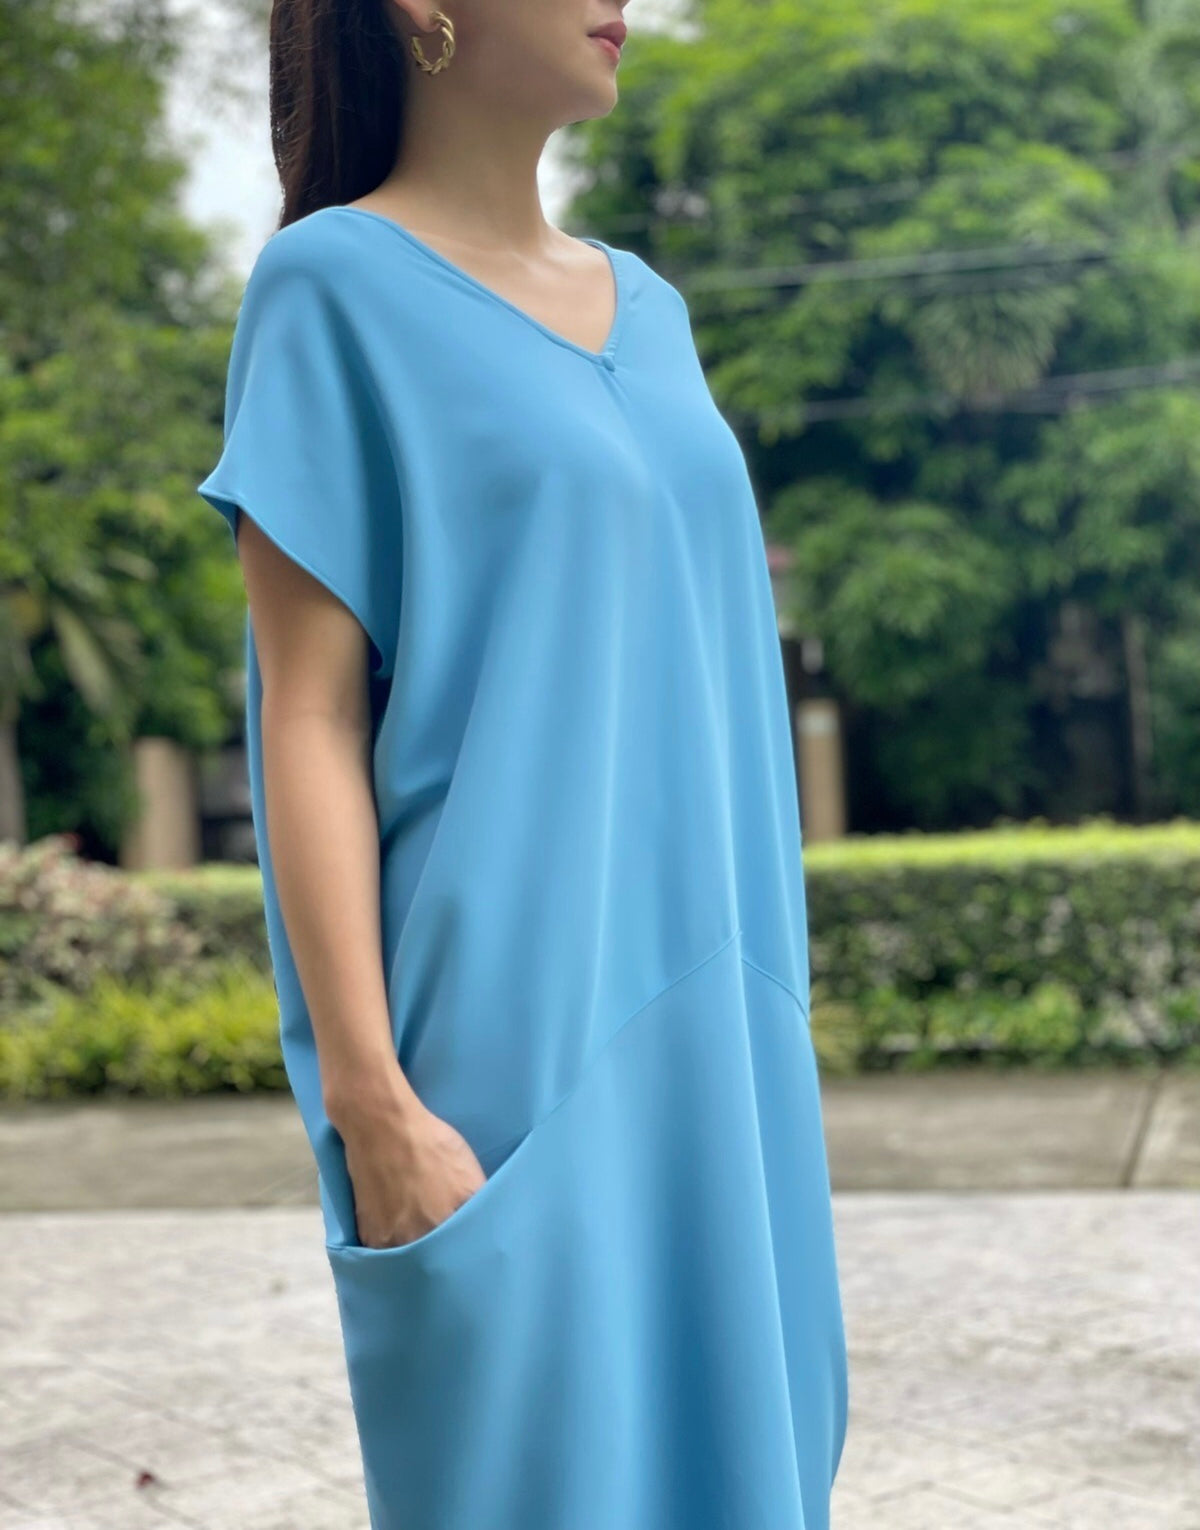 Desiree Dress in Sky Blue